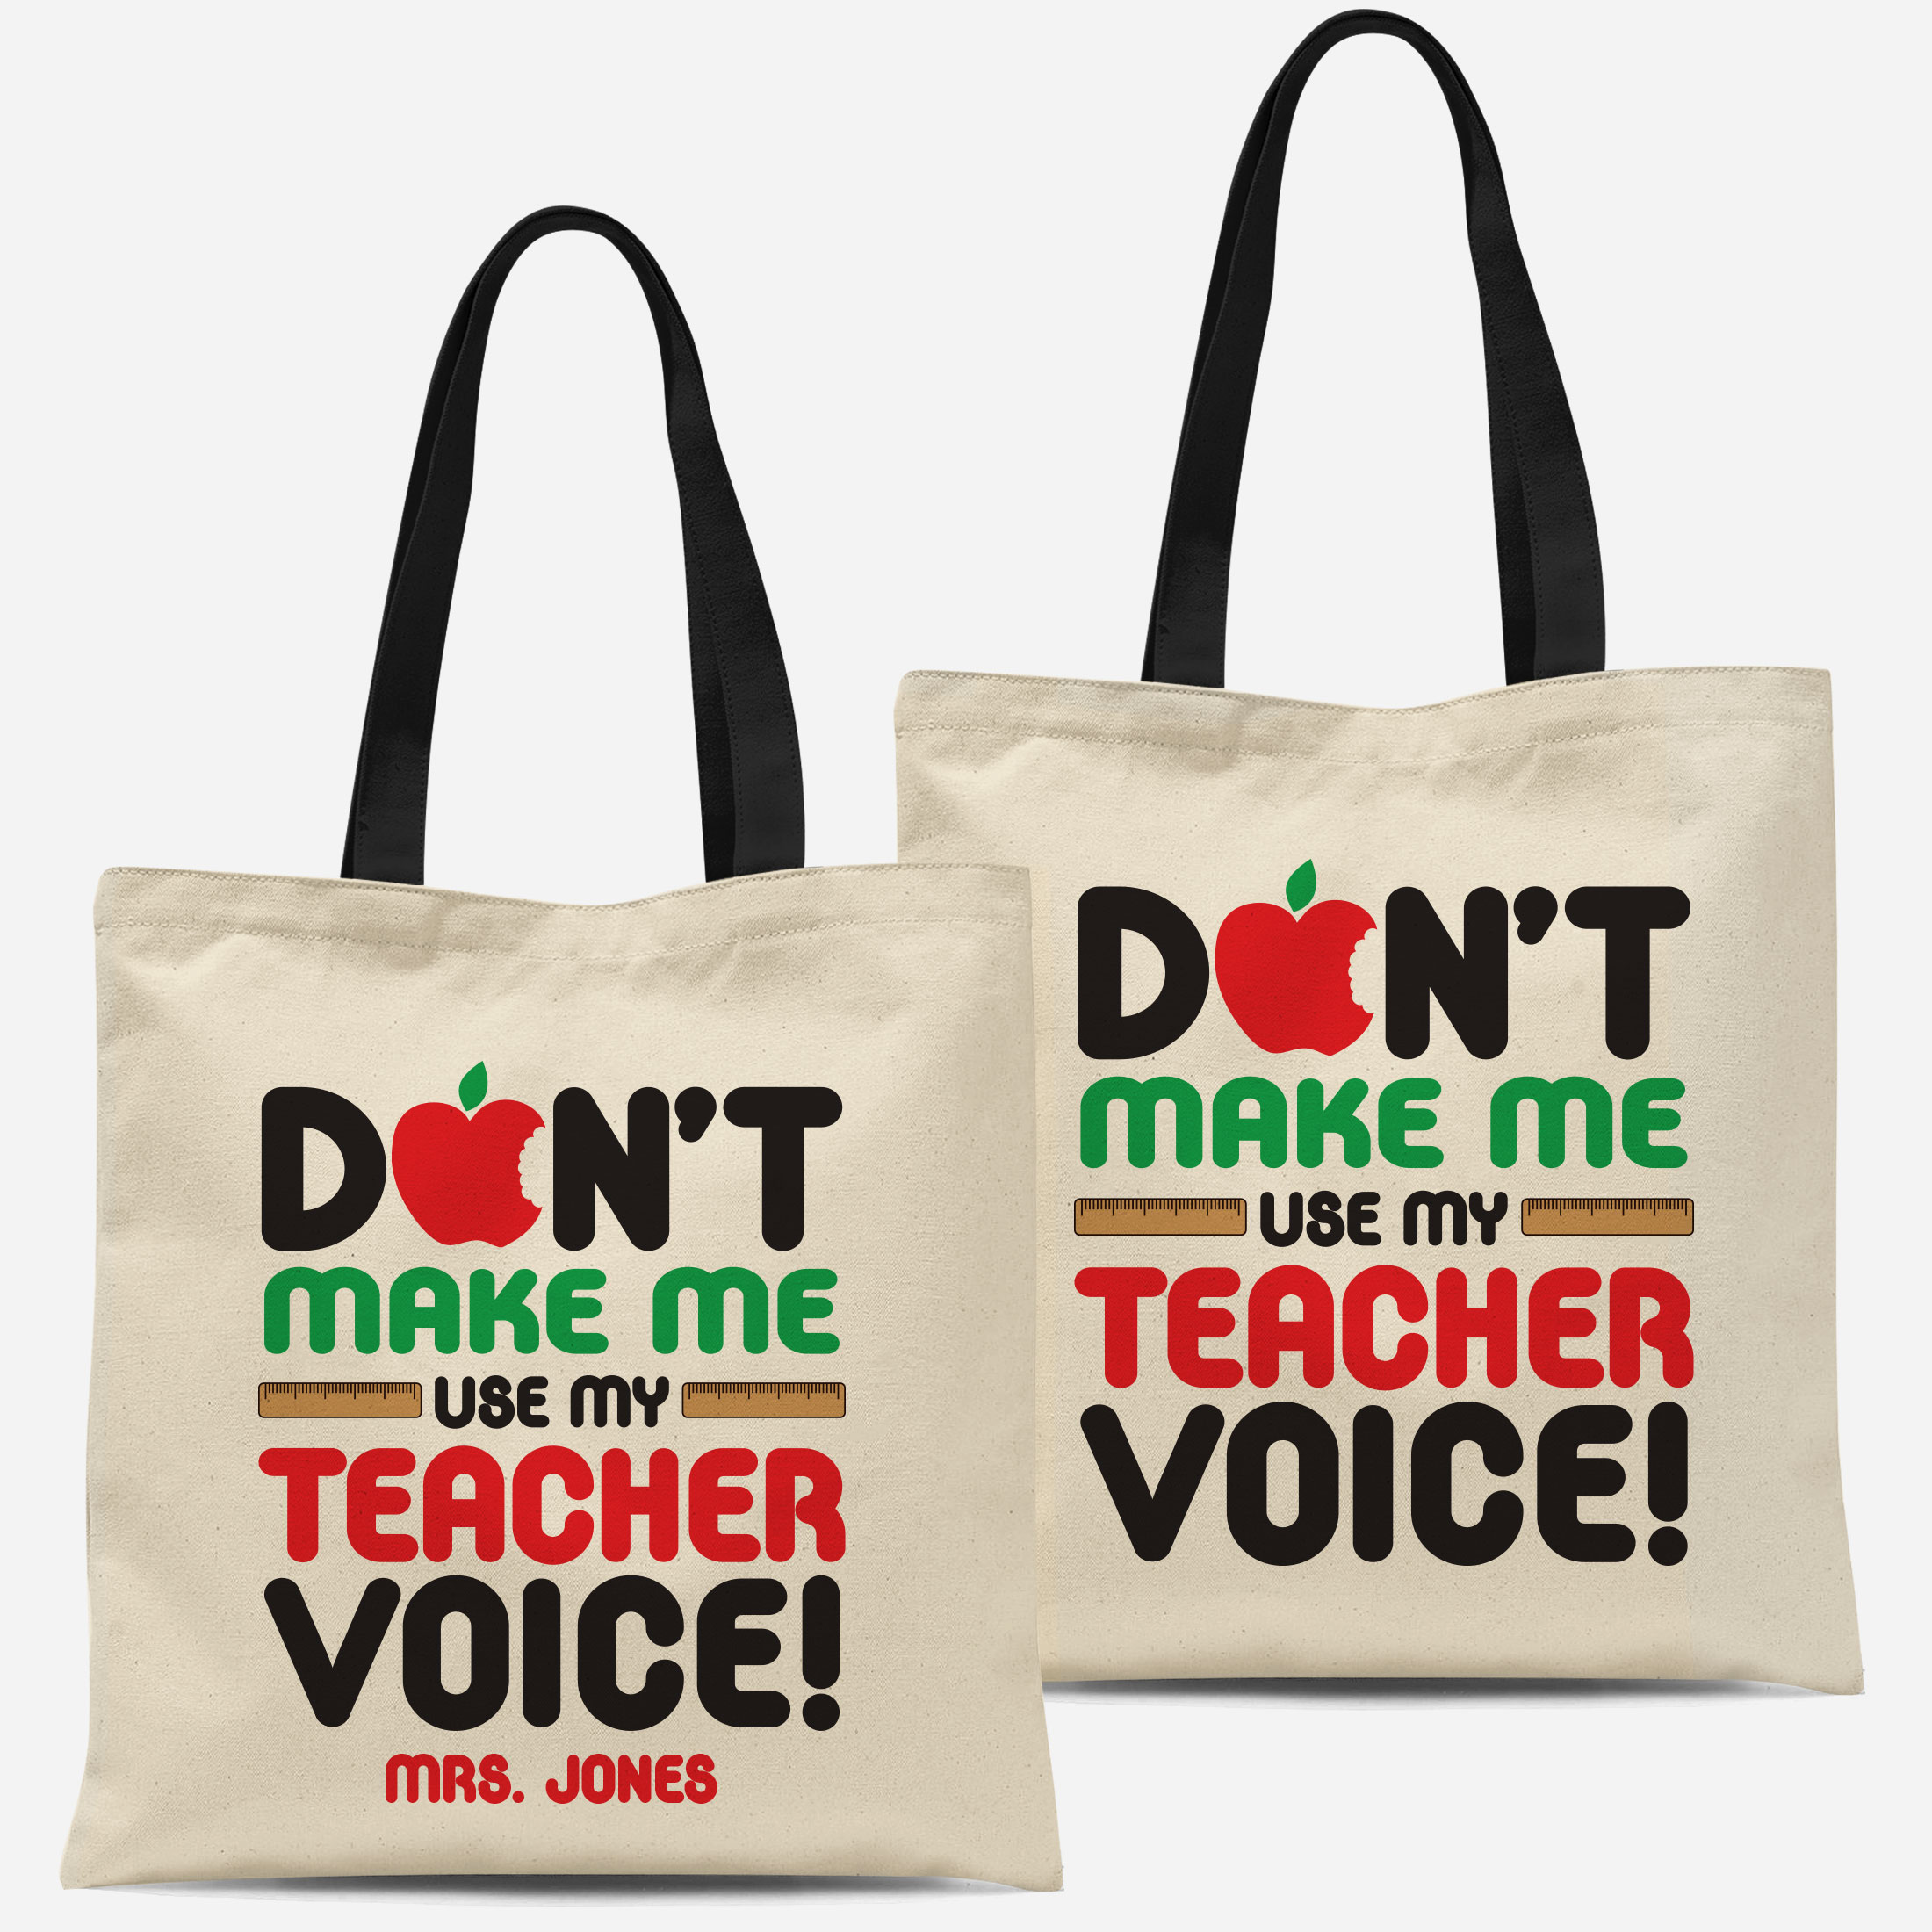 Hero Teacher Tote Gift Bag Teacher Gift  Personalized Teacher Hero Th –  Sweet Hooligans Design